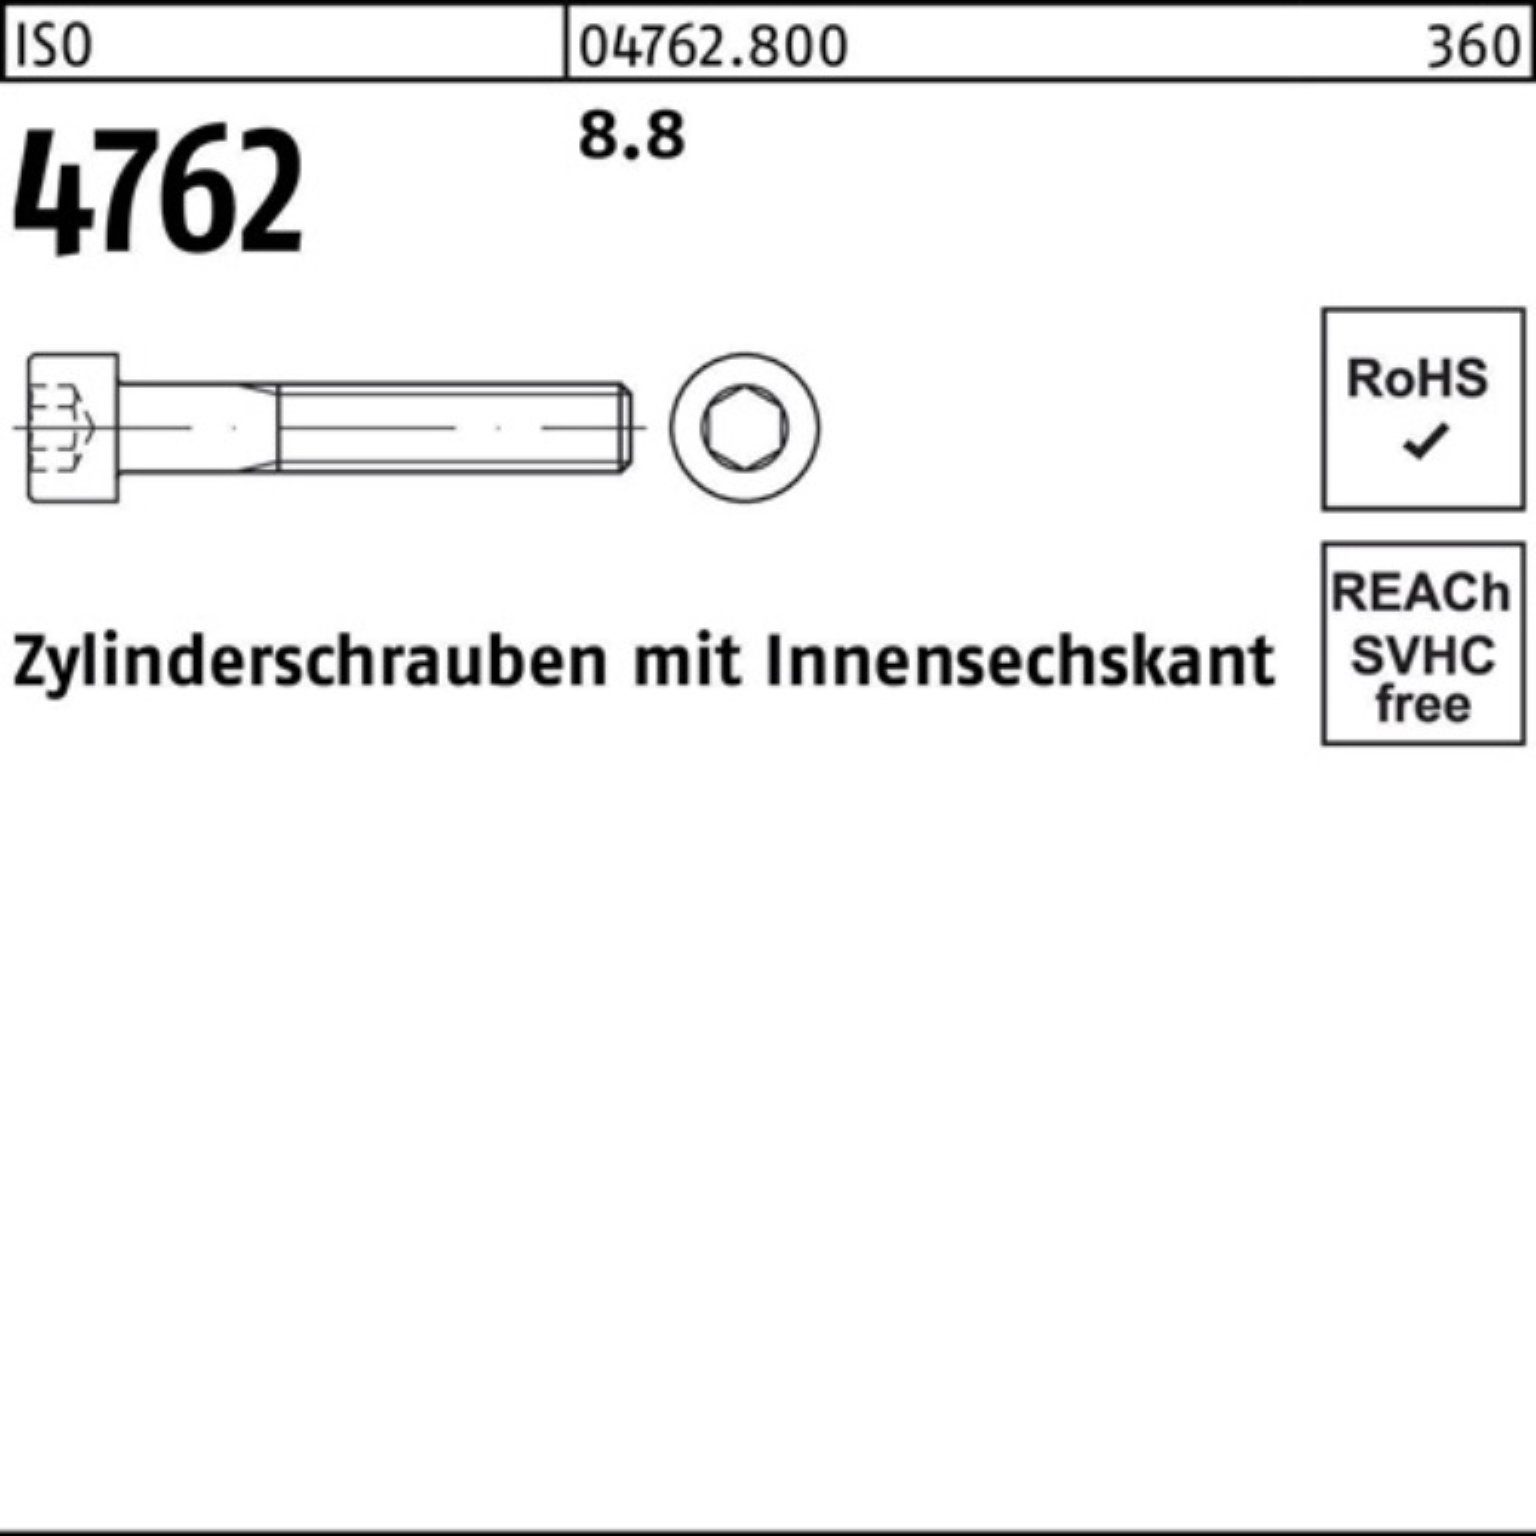 Pack Zylinderschraube Stück Reyher 8.8 Innen-6kt ISO I M20x Zylinderschraube 100er 4762 1 340